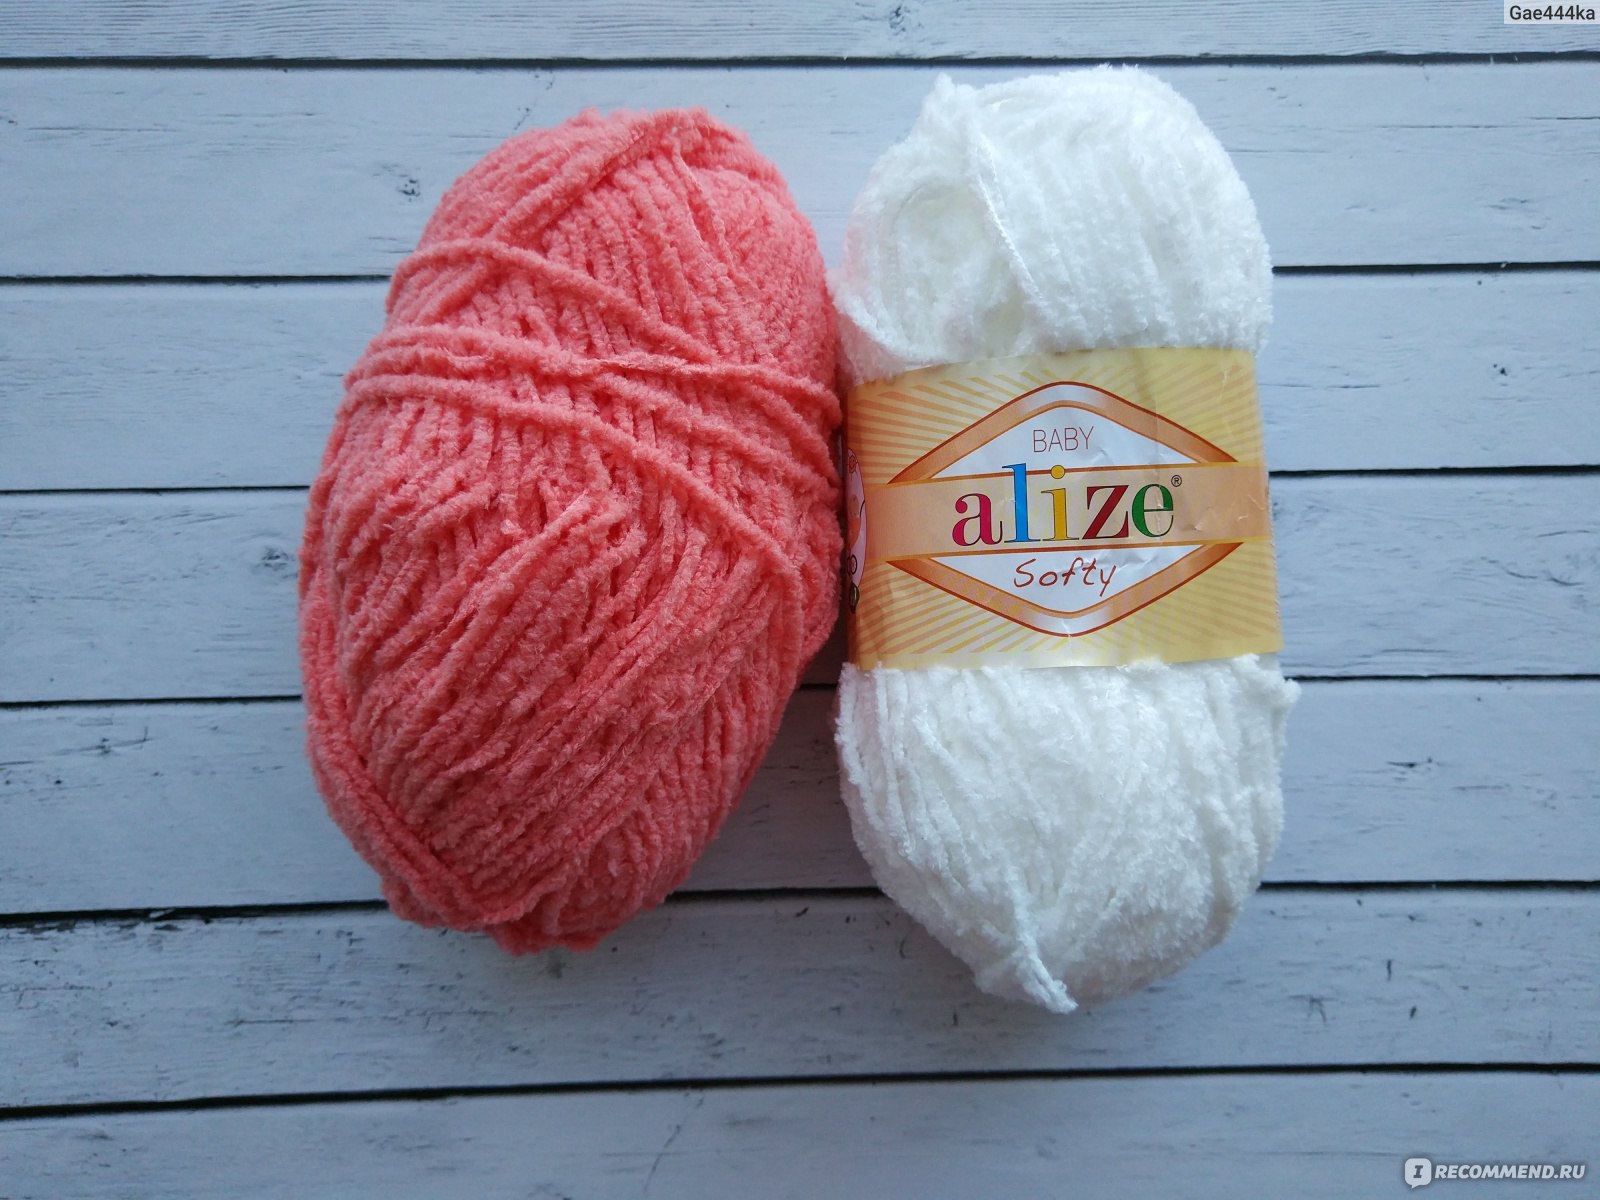 Пряжа Alize Softy - купить в официальном магазине 